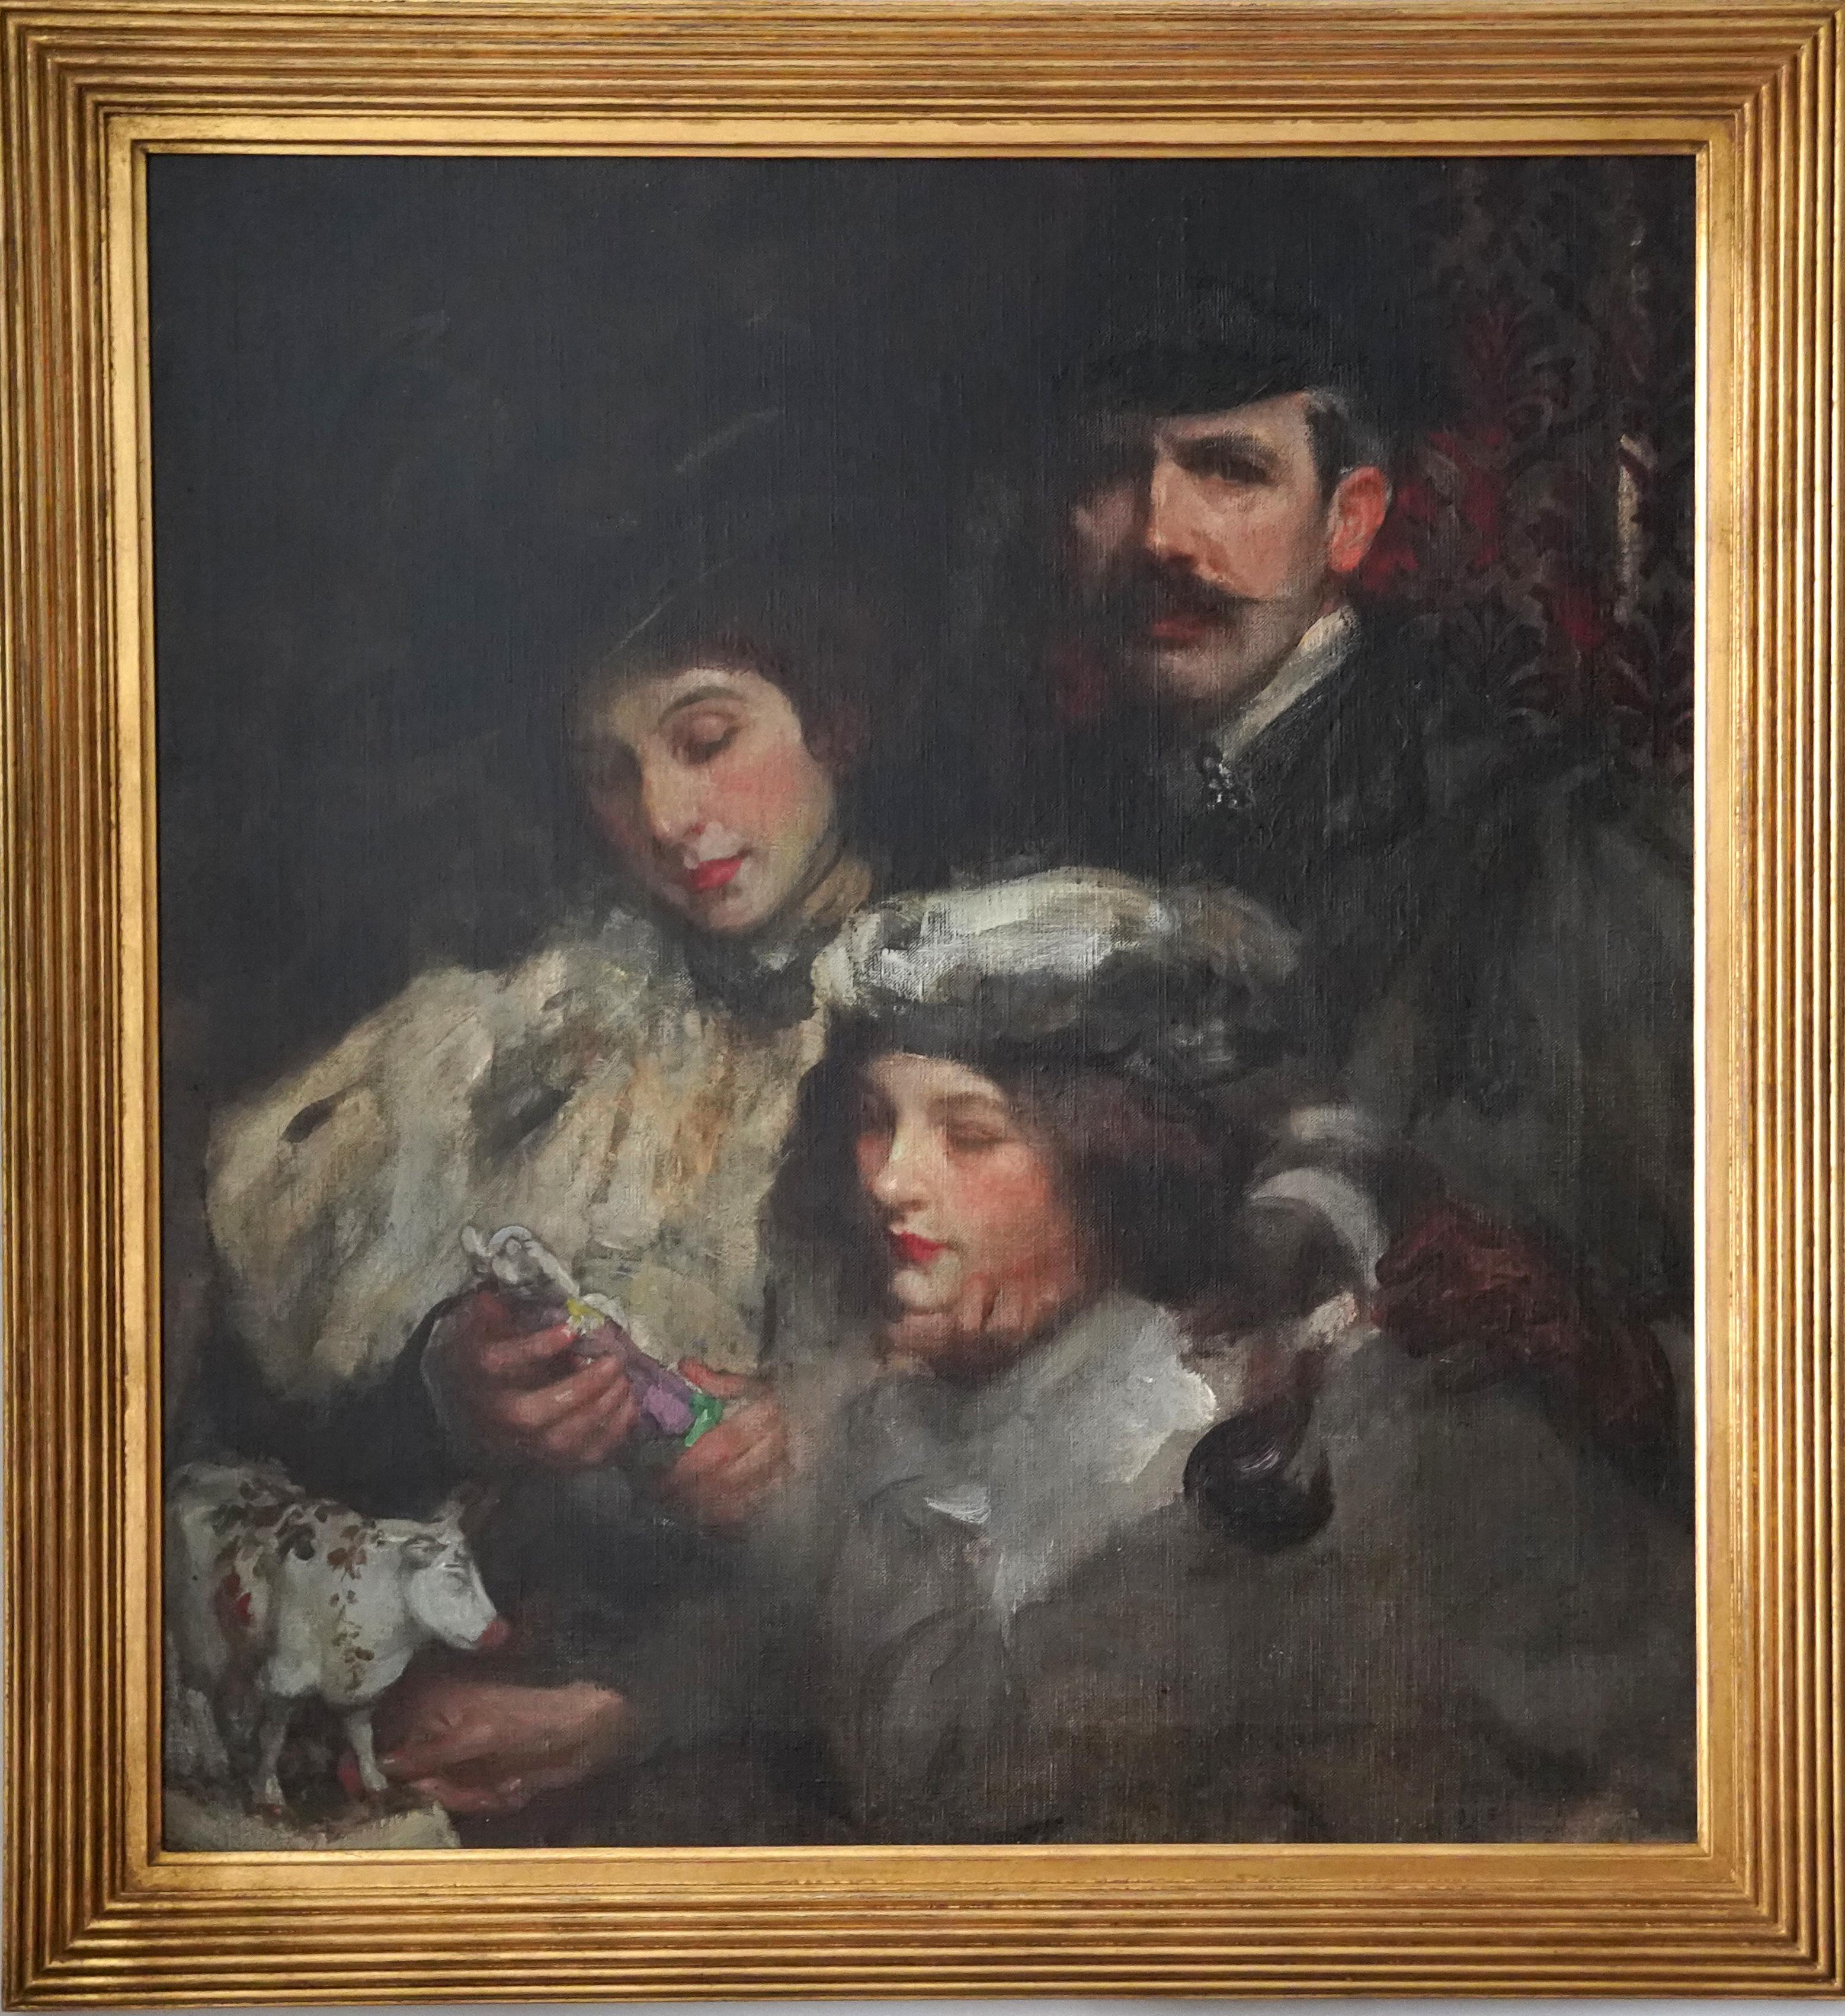 Künstler-Familienporträt – Ölgemälde des britischen amerikanischen Impressionismus